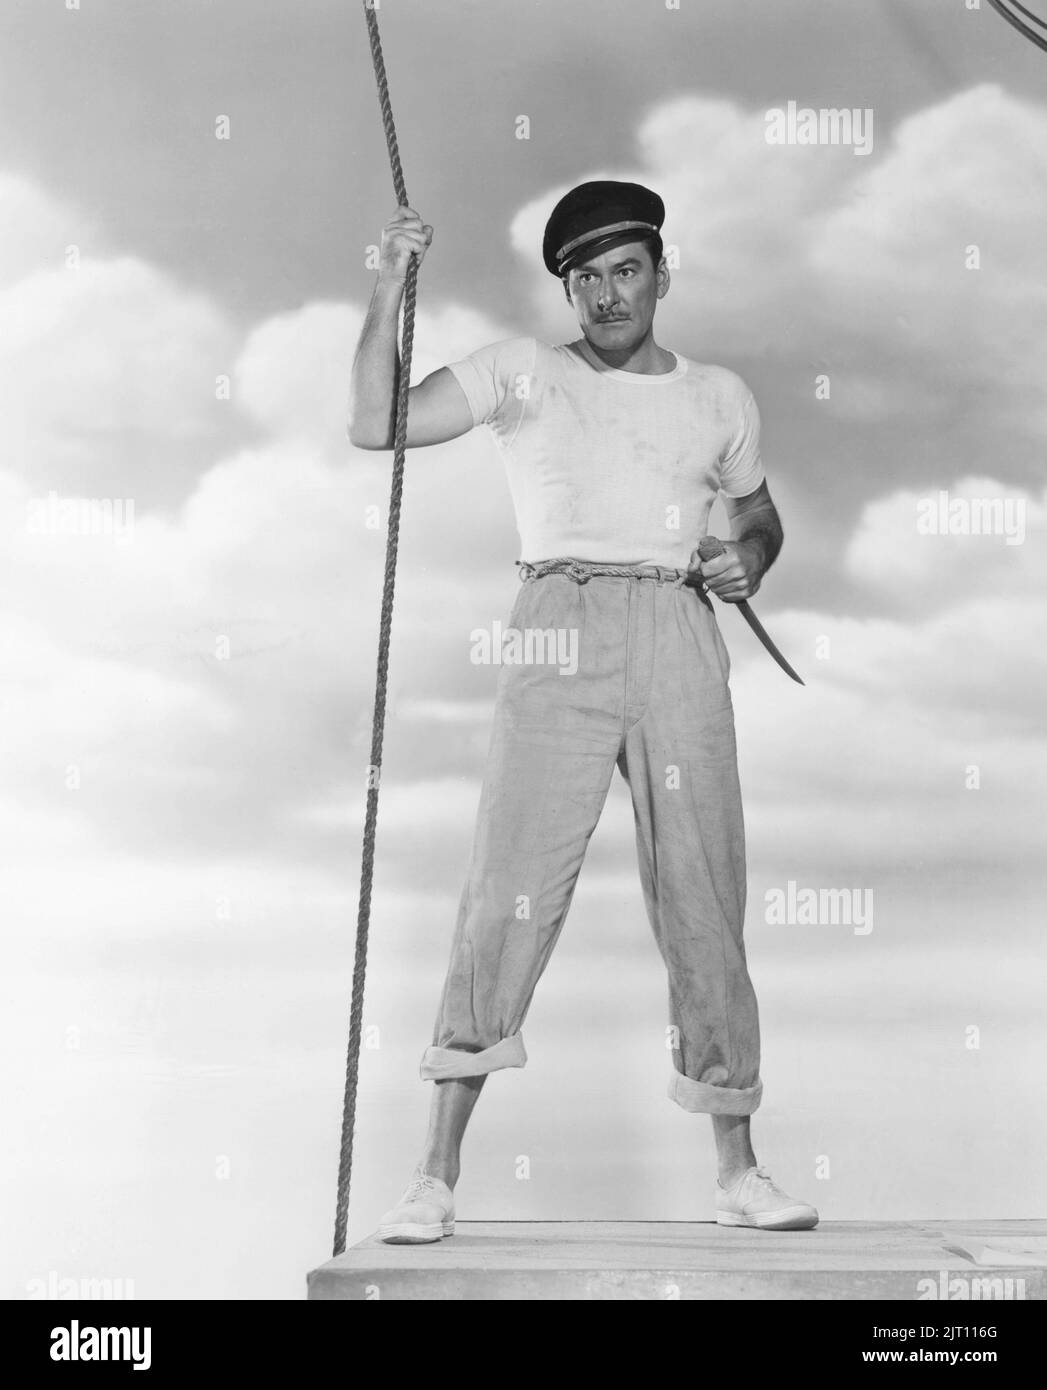 Errol Flynn. Acteur américano-australien. 20 juin 1909 - 14 octobre 1959. Il a atteint la renommée mondiale pendant l'âge d'or d'Hollywood, connu pour ses rôles romantiques de fanfaron. Photo lors de la vedette dans le film Adventures du capitaine Fabian de 1951. Banque D'Images